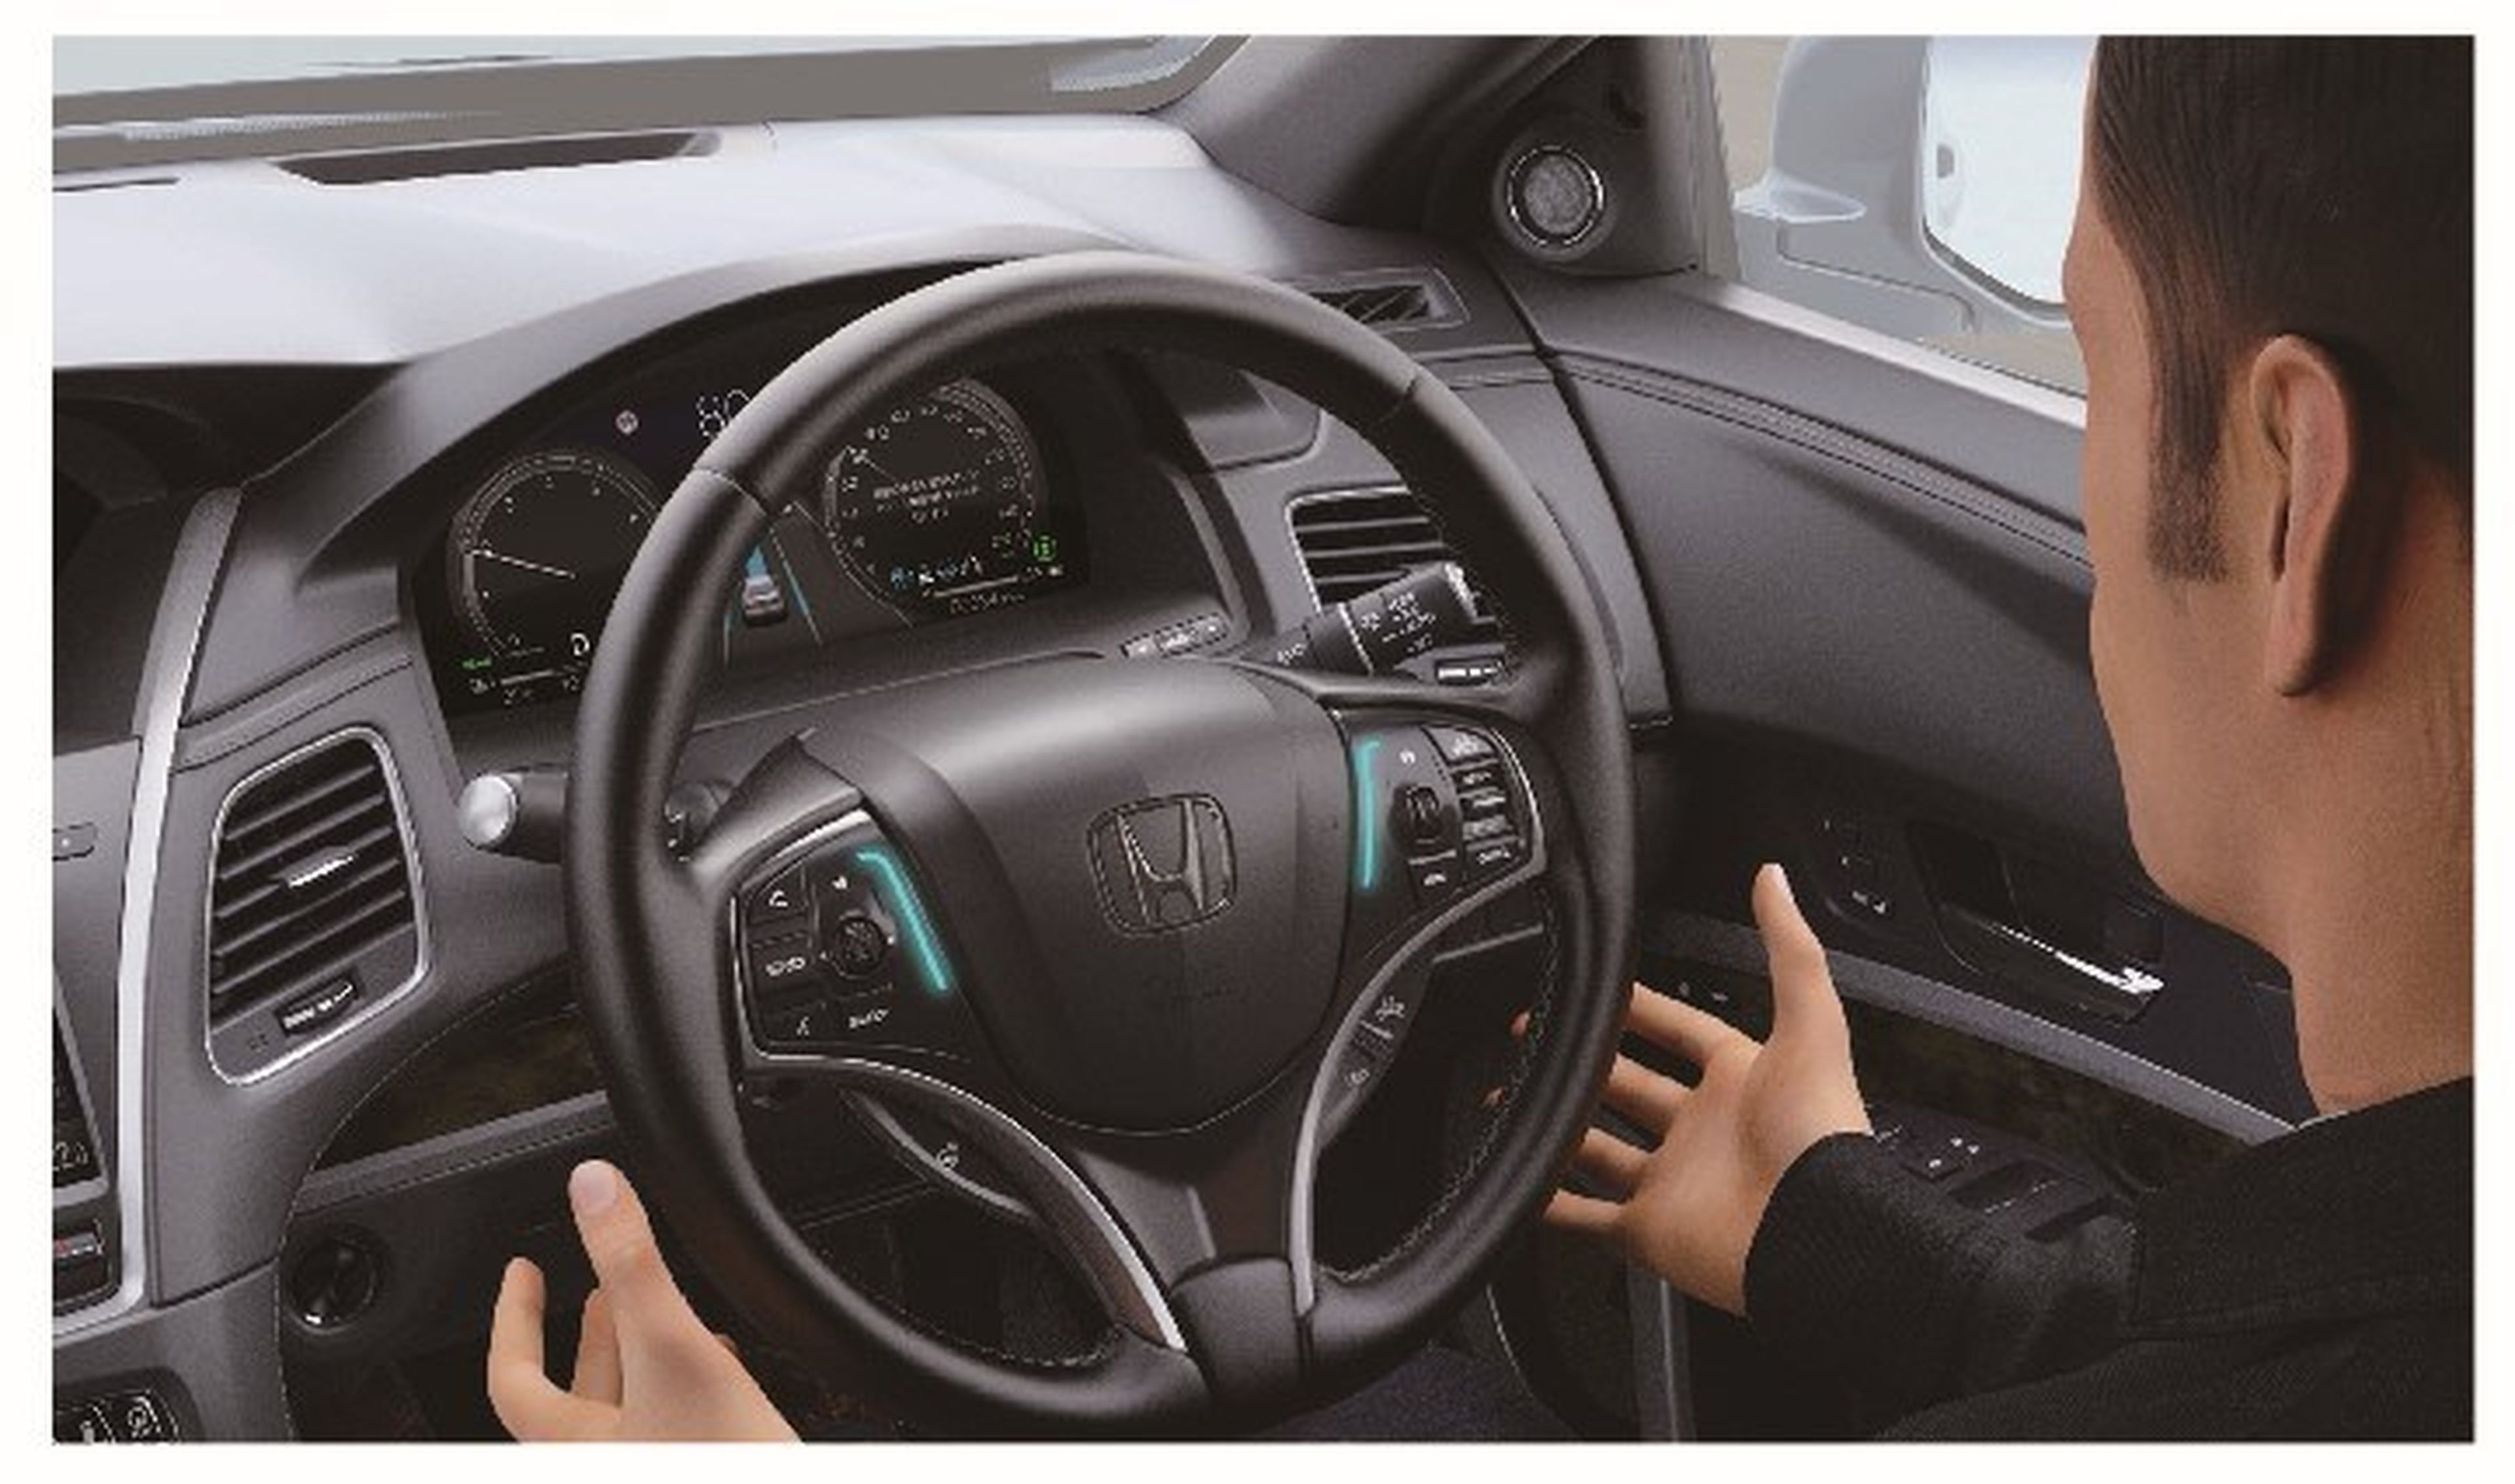 El sistema incorpora unas luces LED en el volante que alertan de cuando el vehículo está en modo autónomo